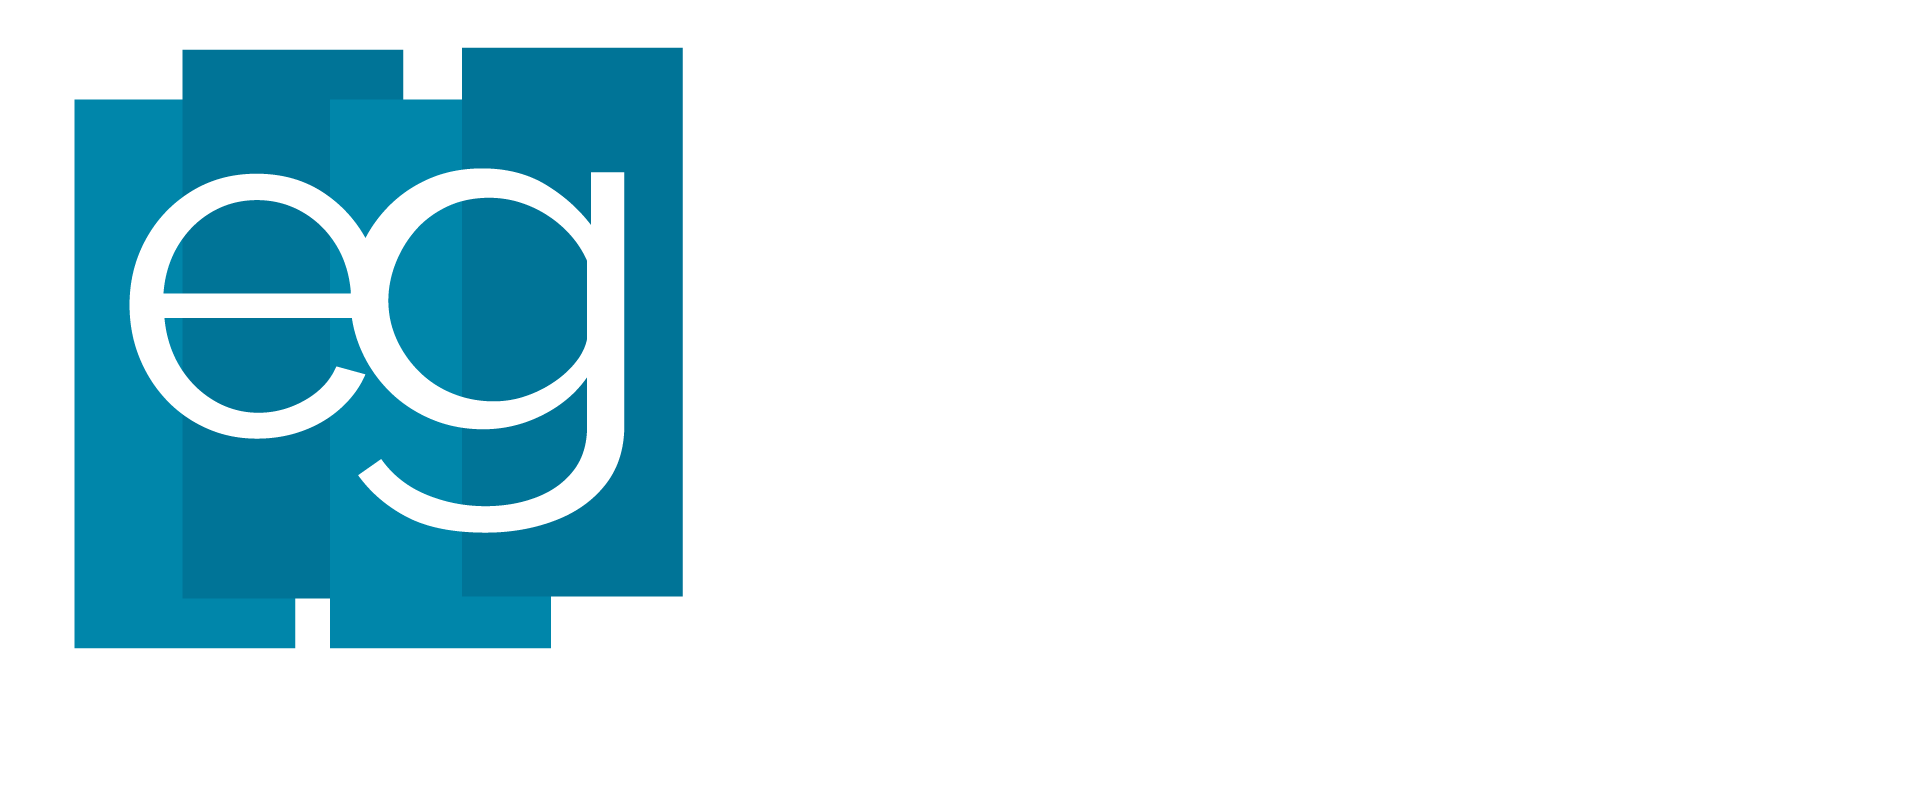 Logo EG empresarios Granada en Blanco